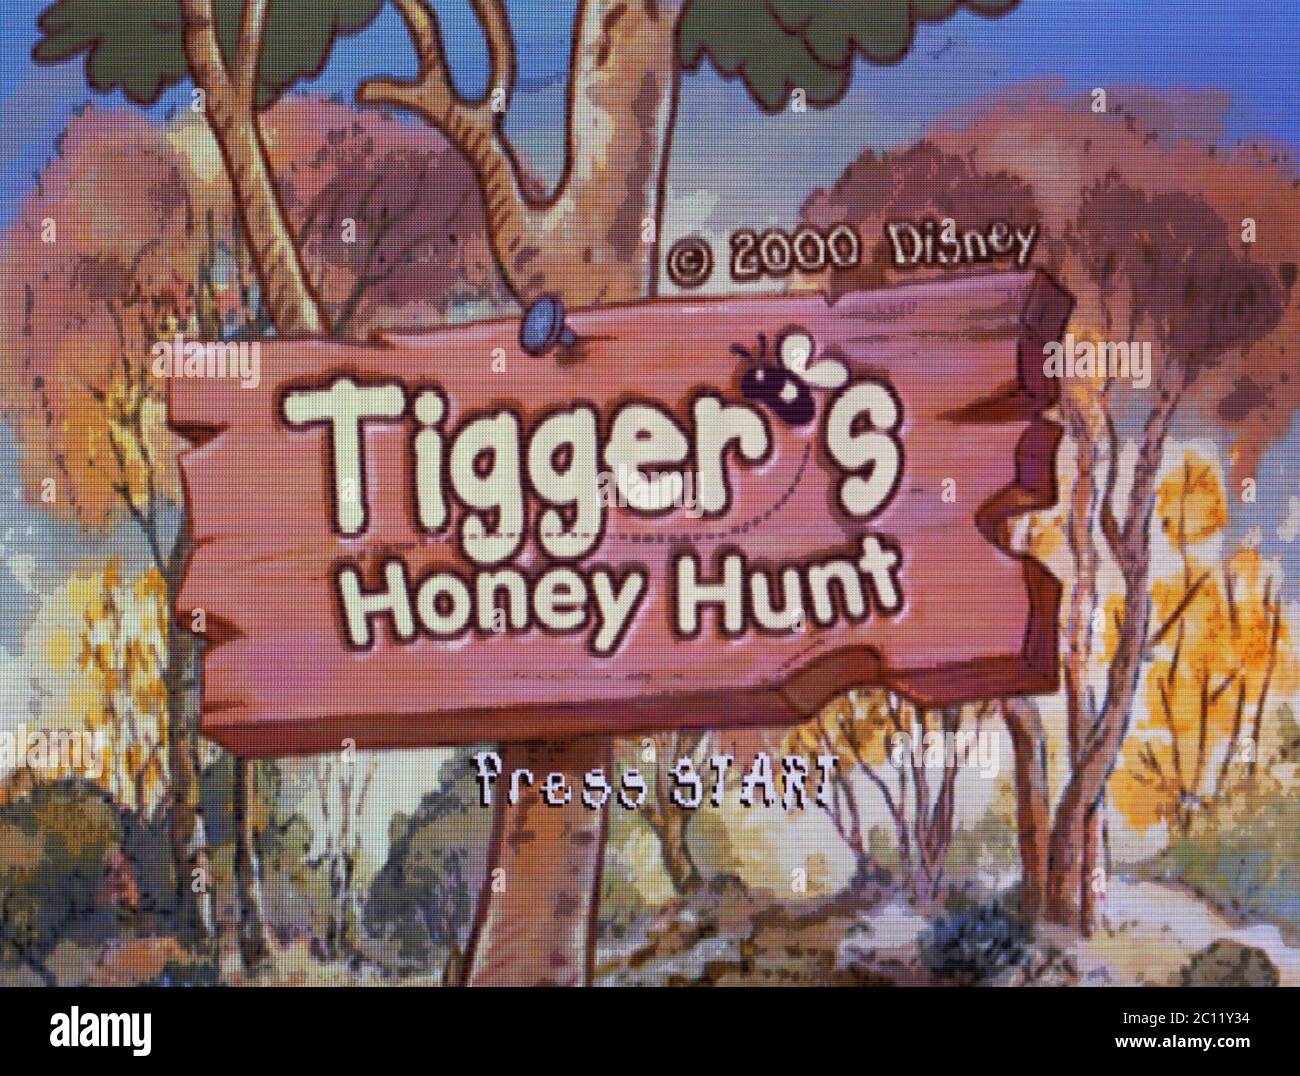 tigger's honey hunt